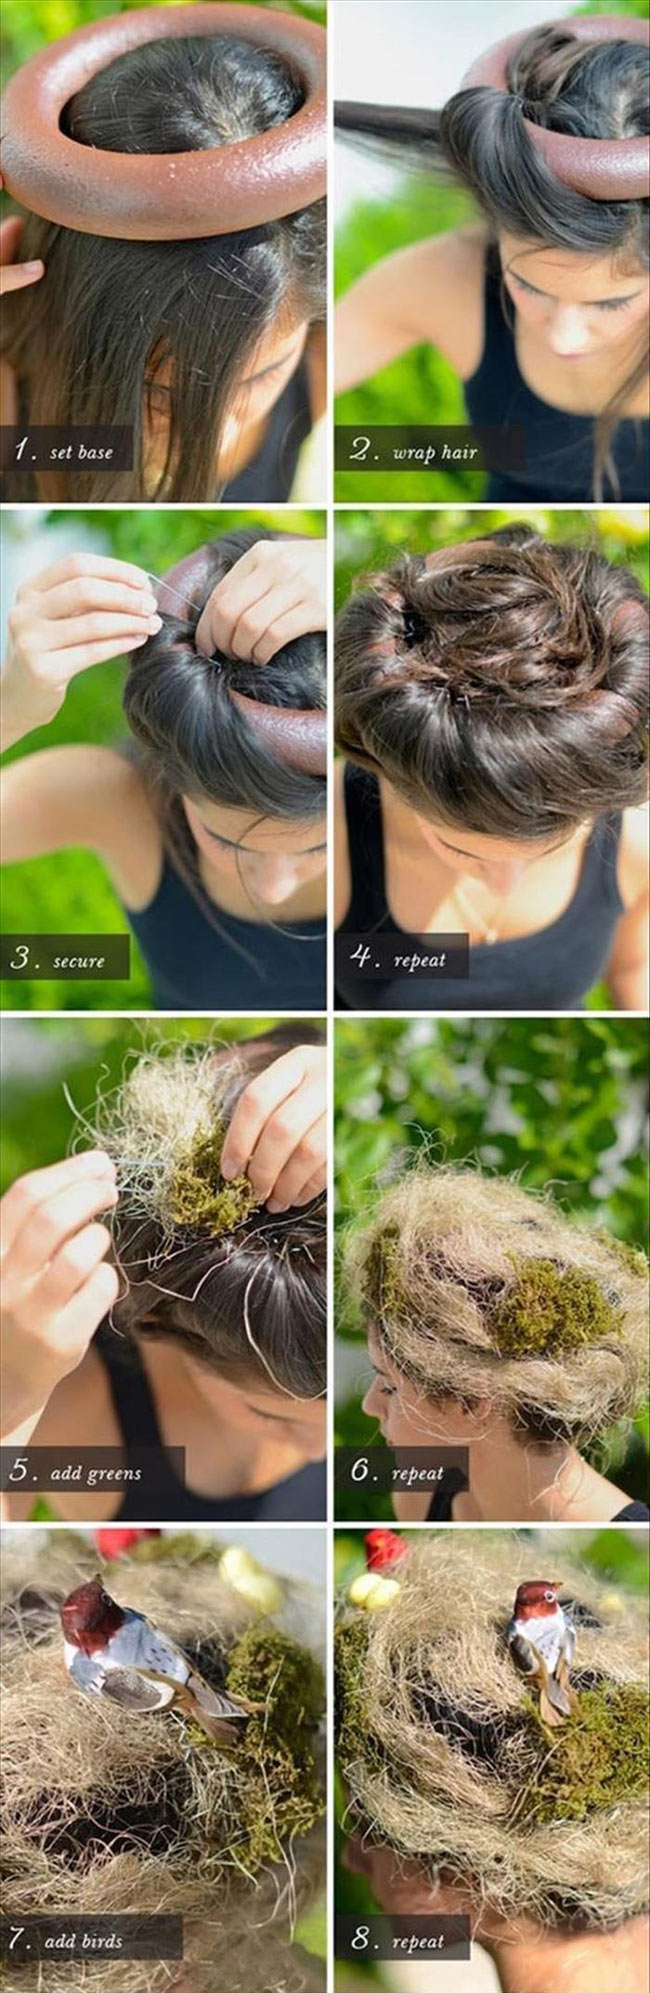 Birds nest hair style - how to